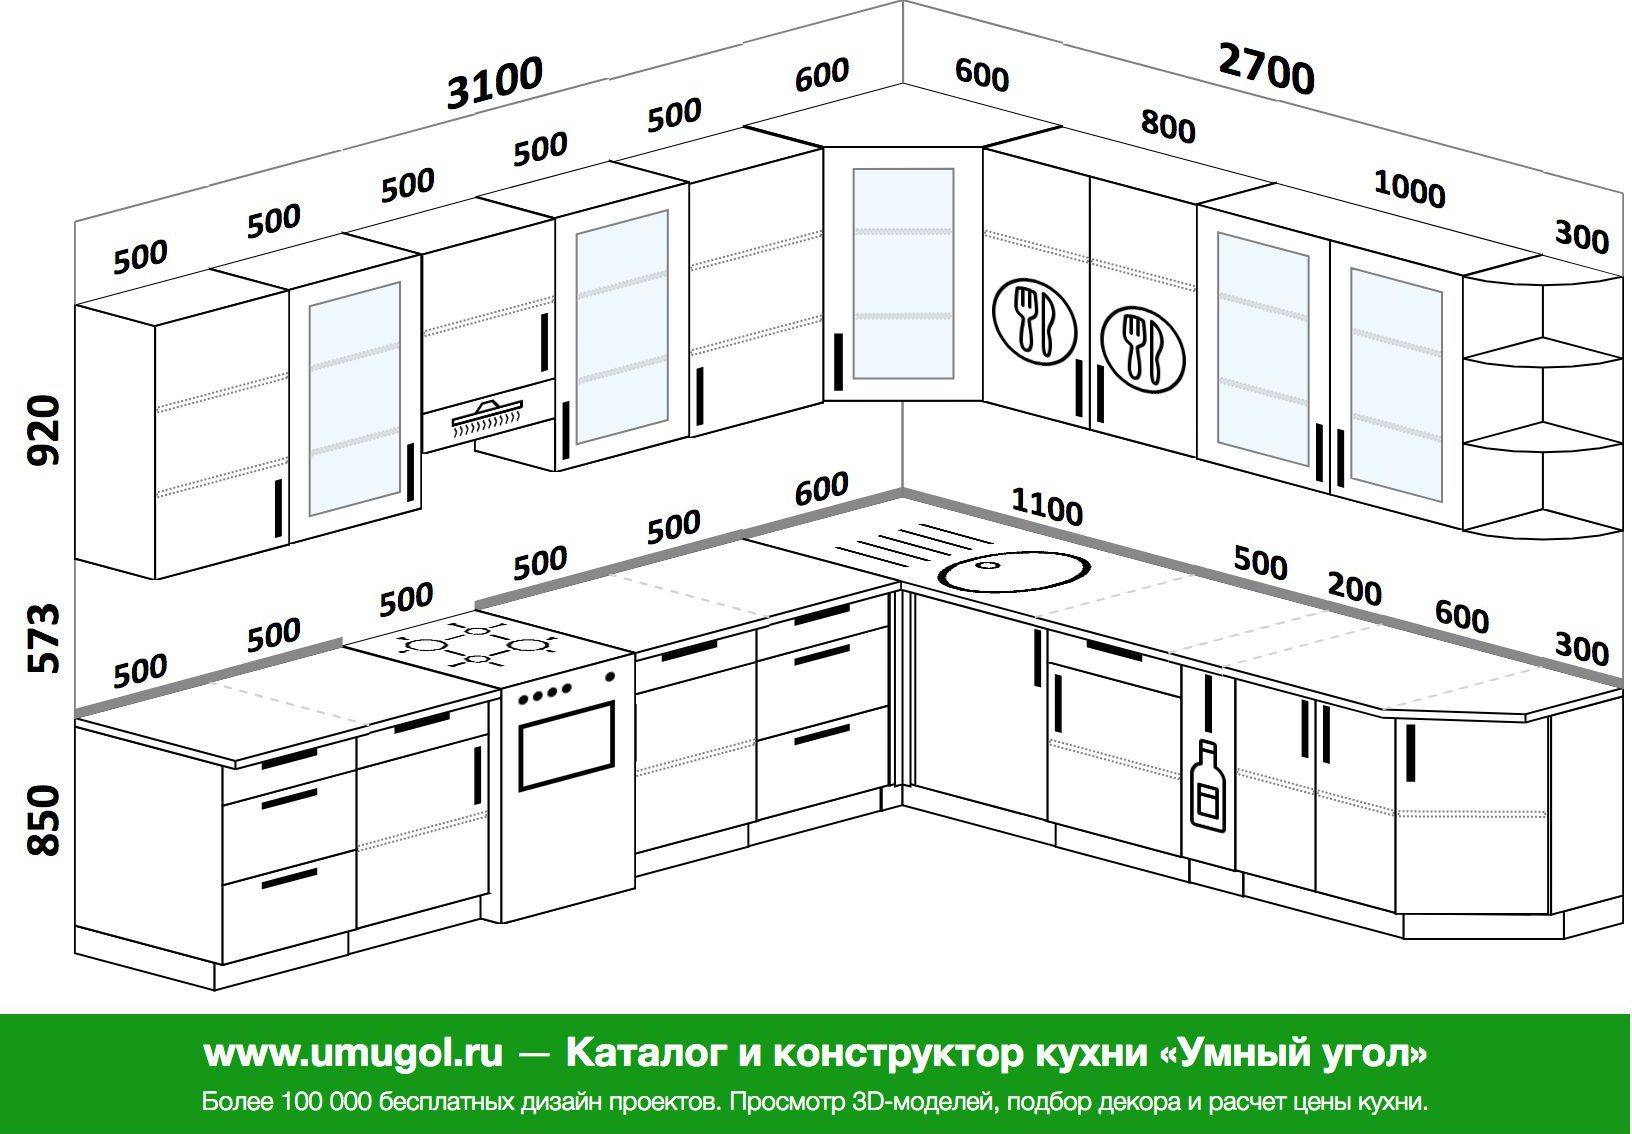 стандартная высота кухонного гарнитура от пола до фартука на кухне